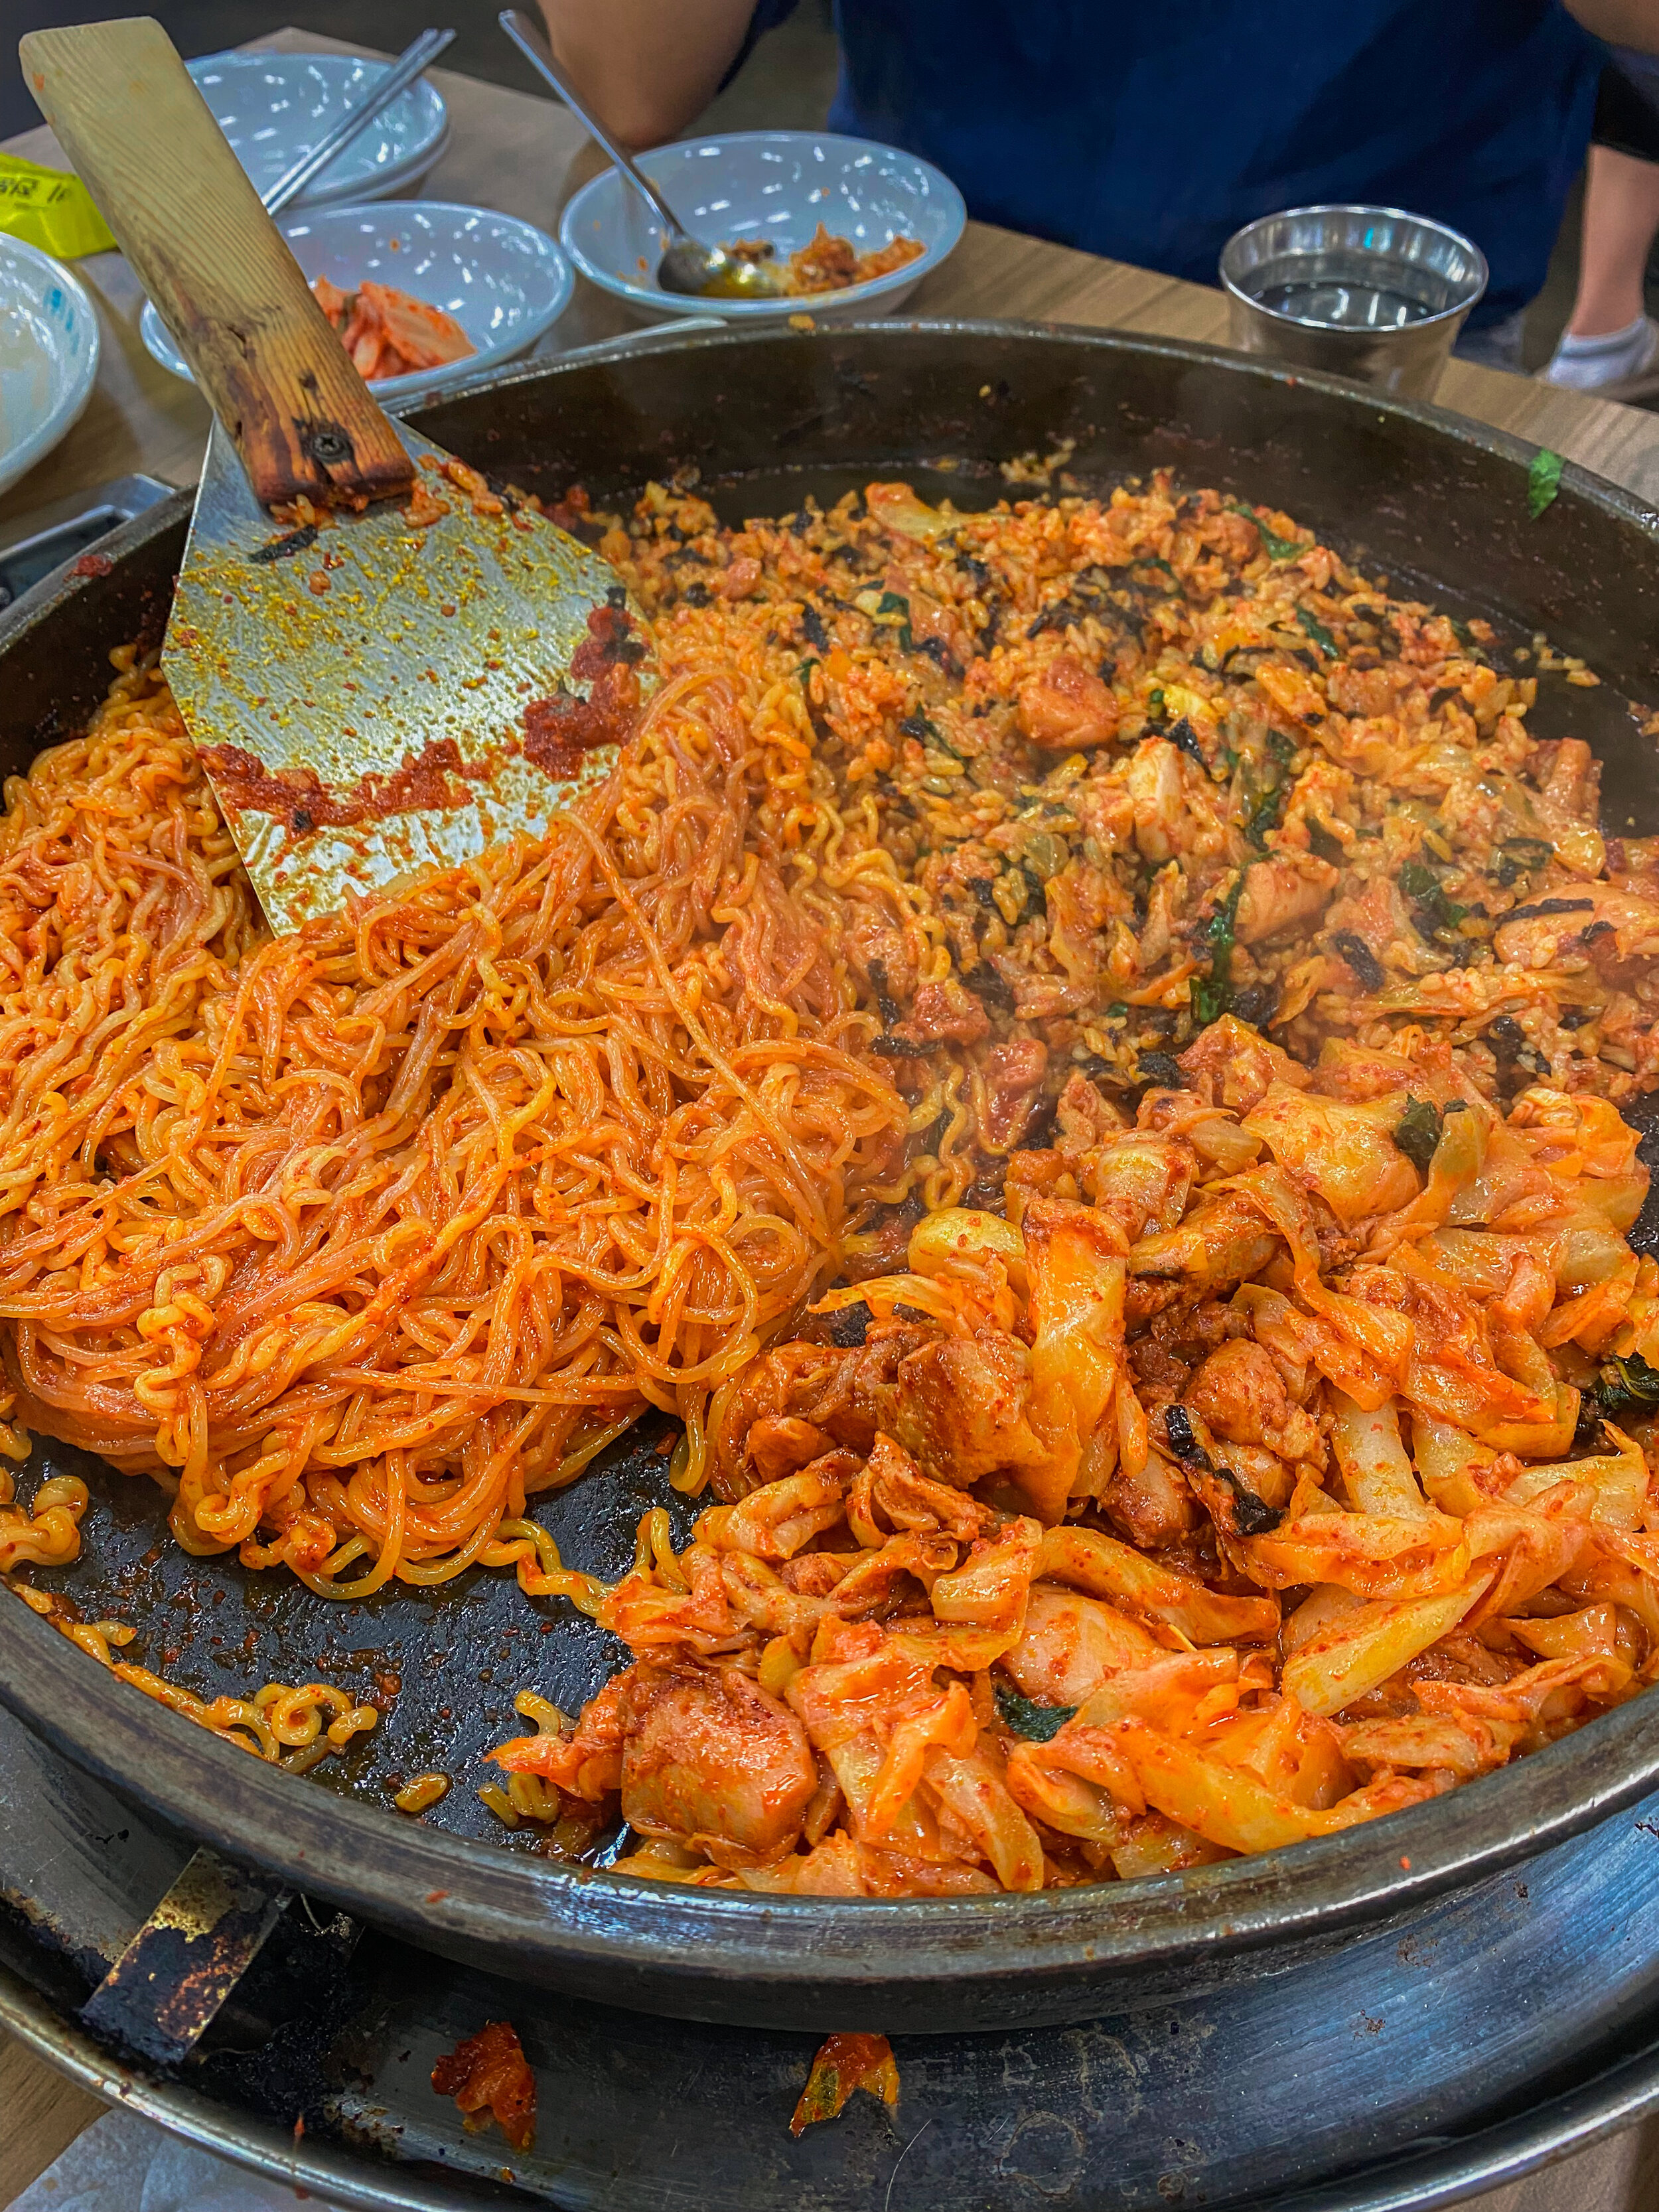 dalkgalbi--my fave korean food